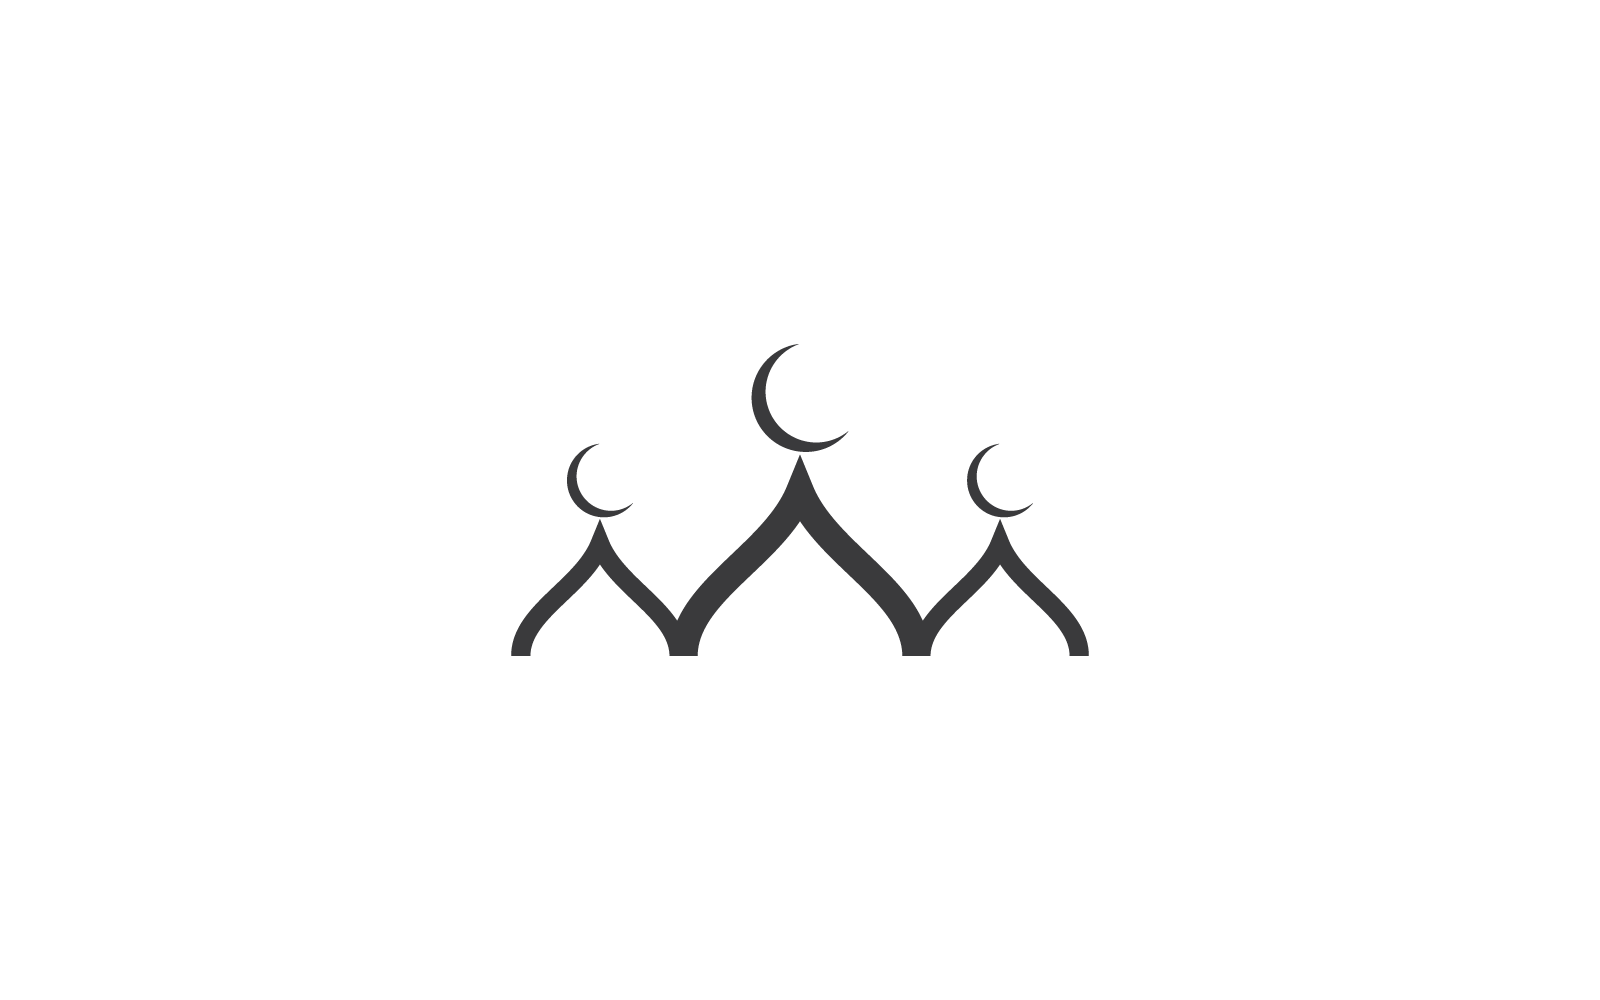 Islamic logo, Mosque icon vector design template